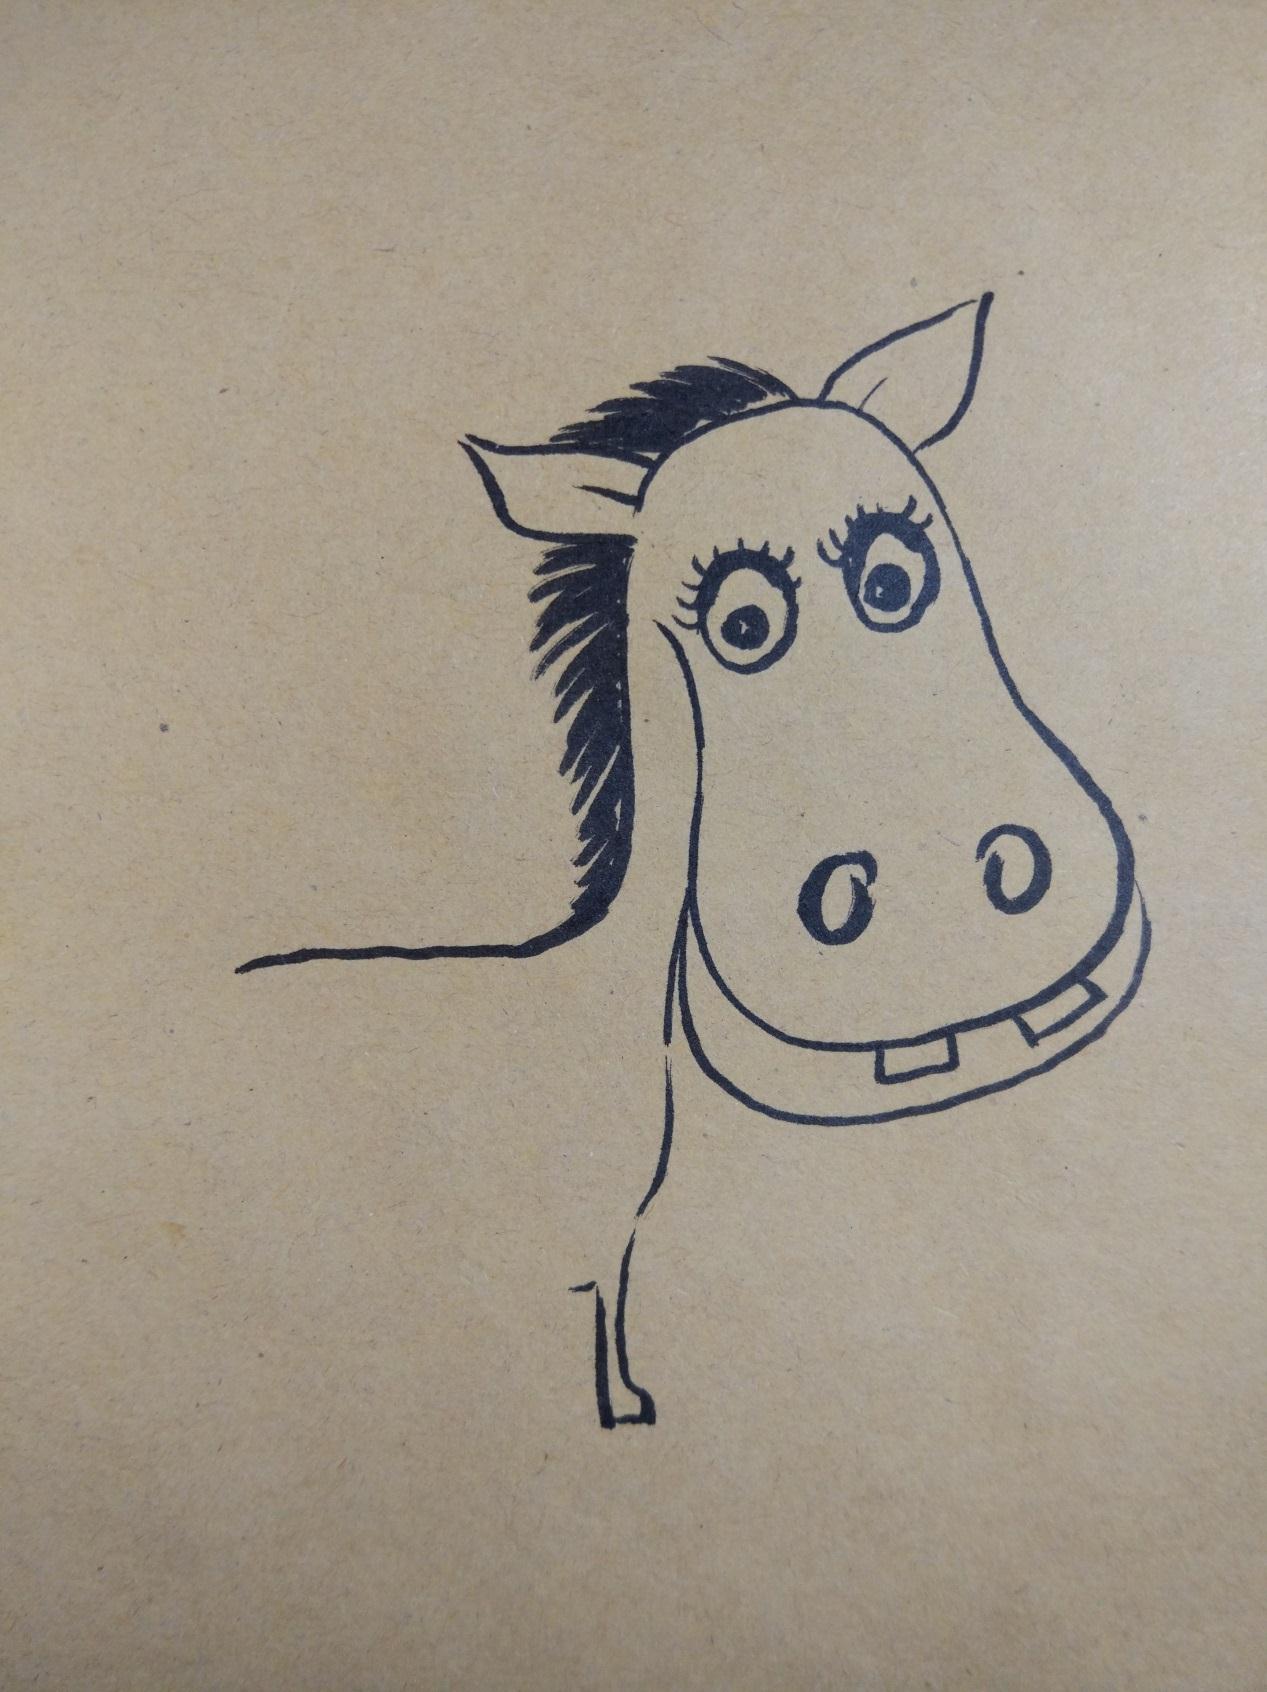 简单的有趣的手工DIY彩色的小马驹彩绘画的教程图